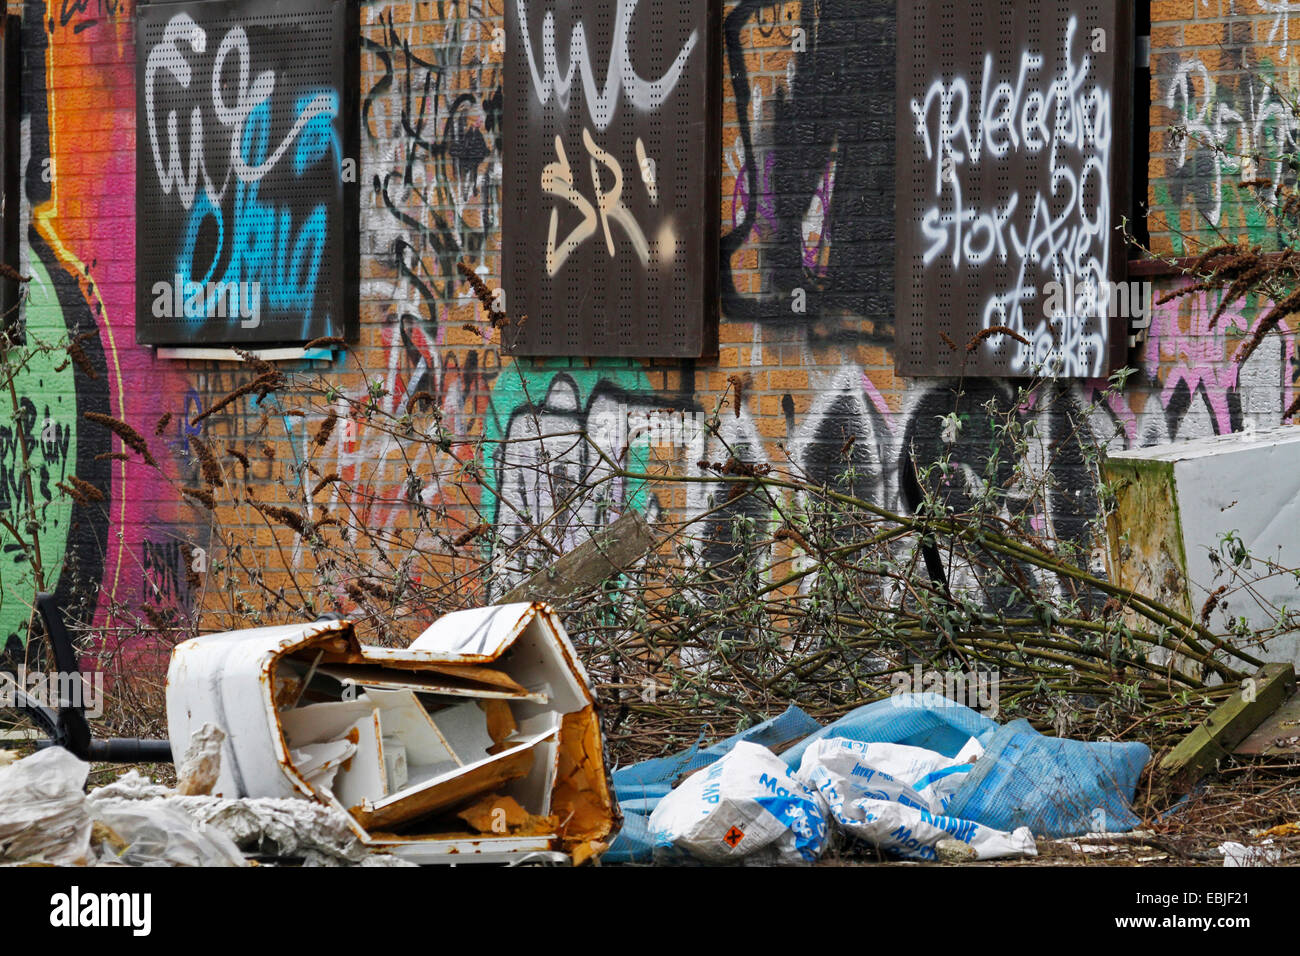 Les graffitis et dépotoir illégale à un système de chemin de fer abandonnée, l'Allemagne, en Rhénanie du Nord-Westphalie, région de la Ruhr, à Essen Banque D'Images